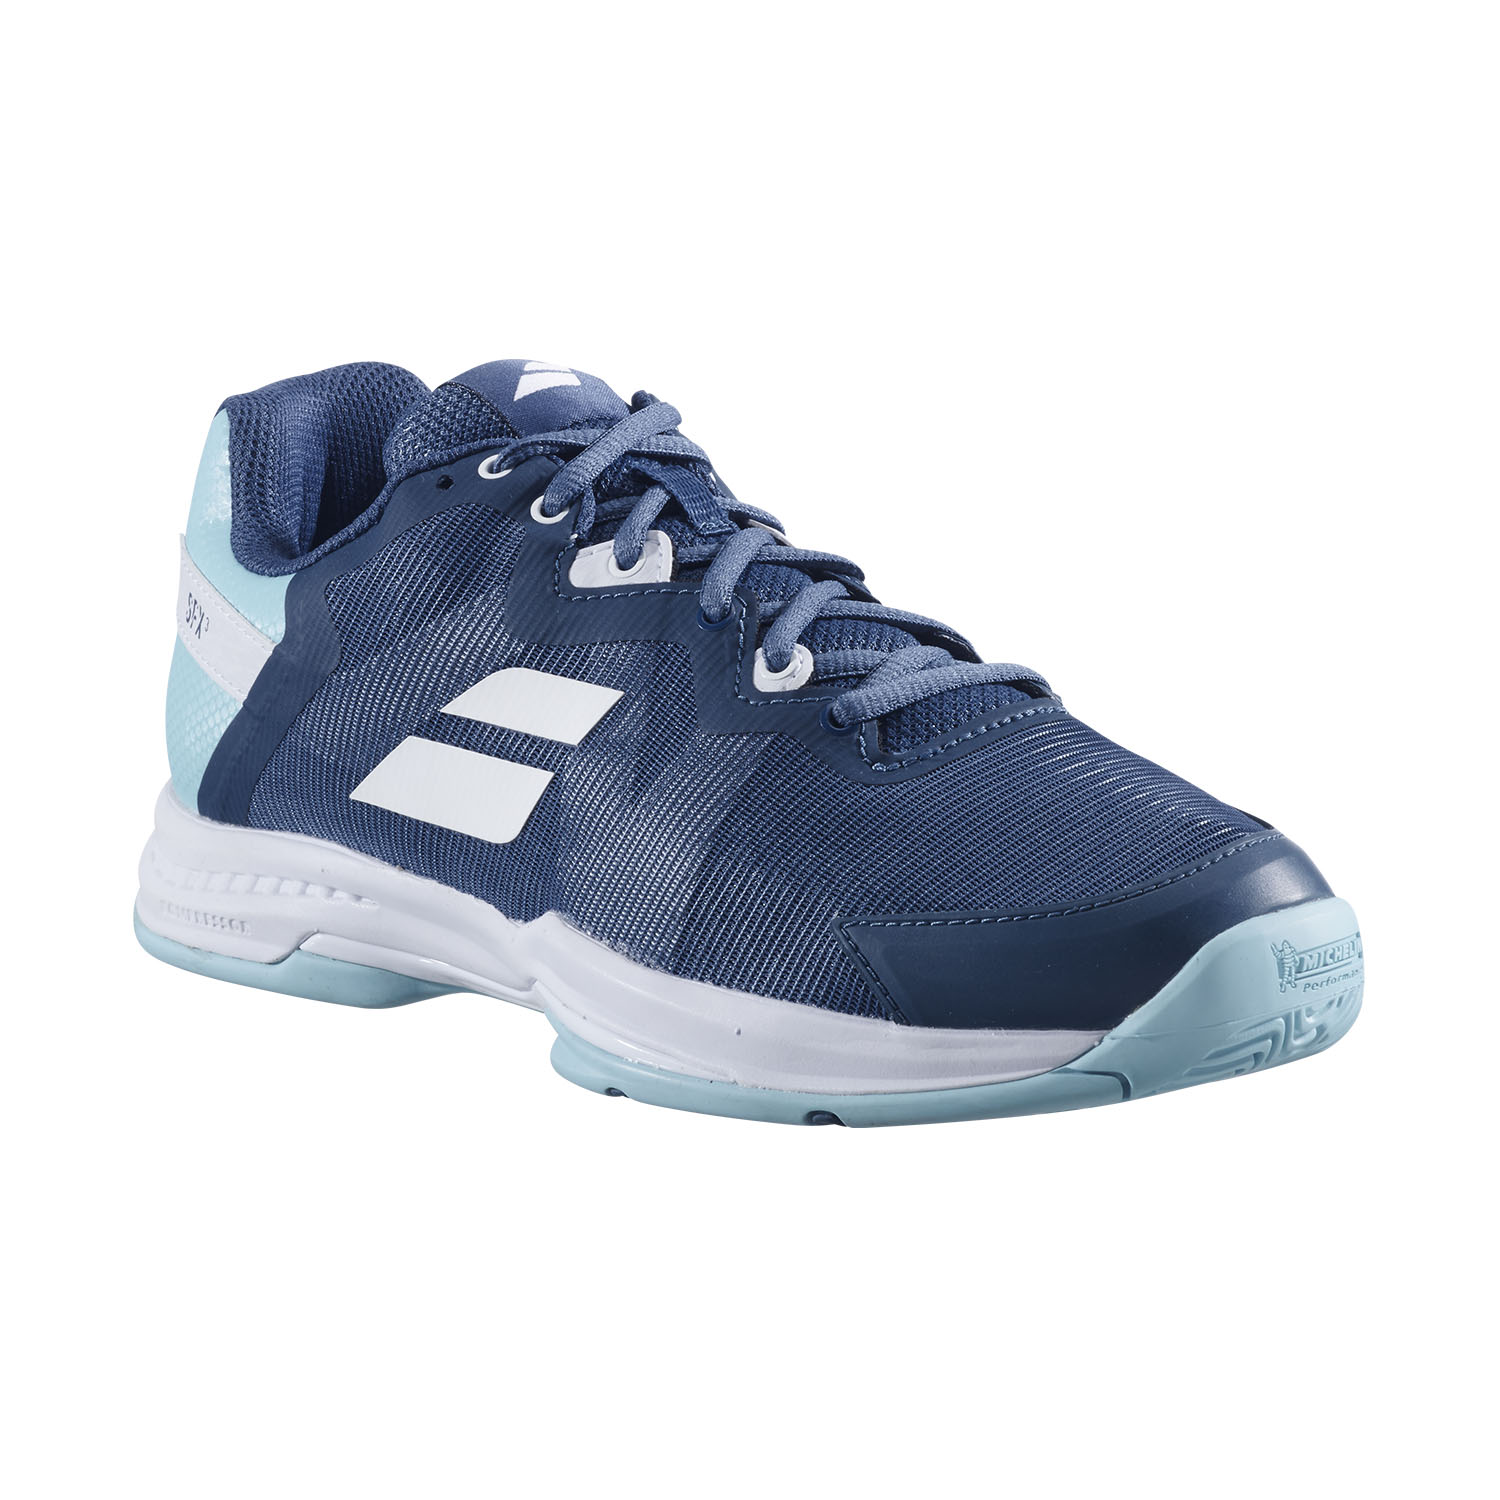 Babolat SFX3 All Court Women's Tennis Shoes - Deep Dive/Blue